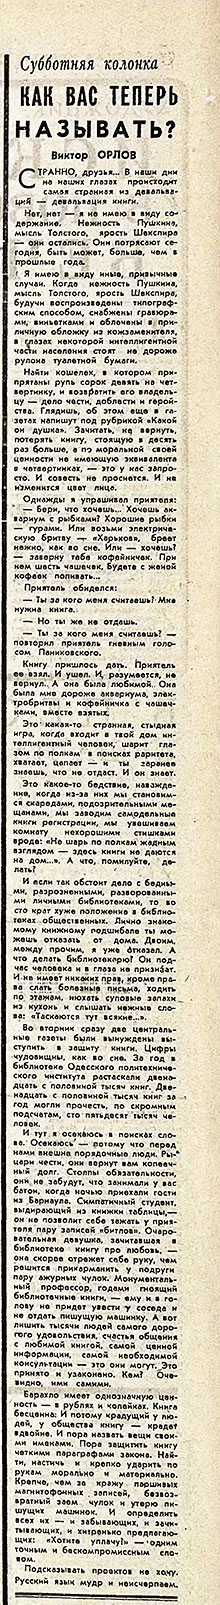 Виктор Орлов. Как вас теперь называть? Газета Советская культура № 88 (3902) от 27 июля 1968 года, стр. 4 - упоминание Битлз